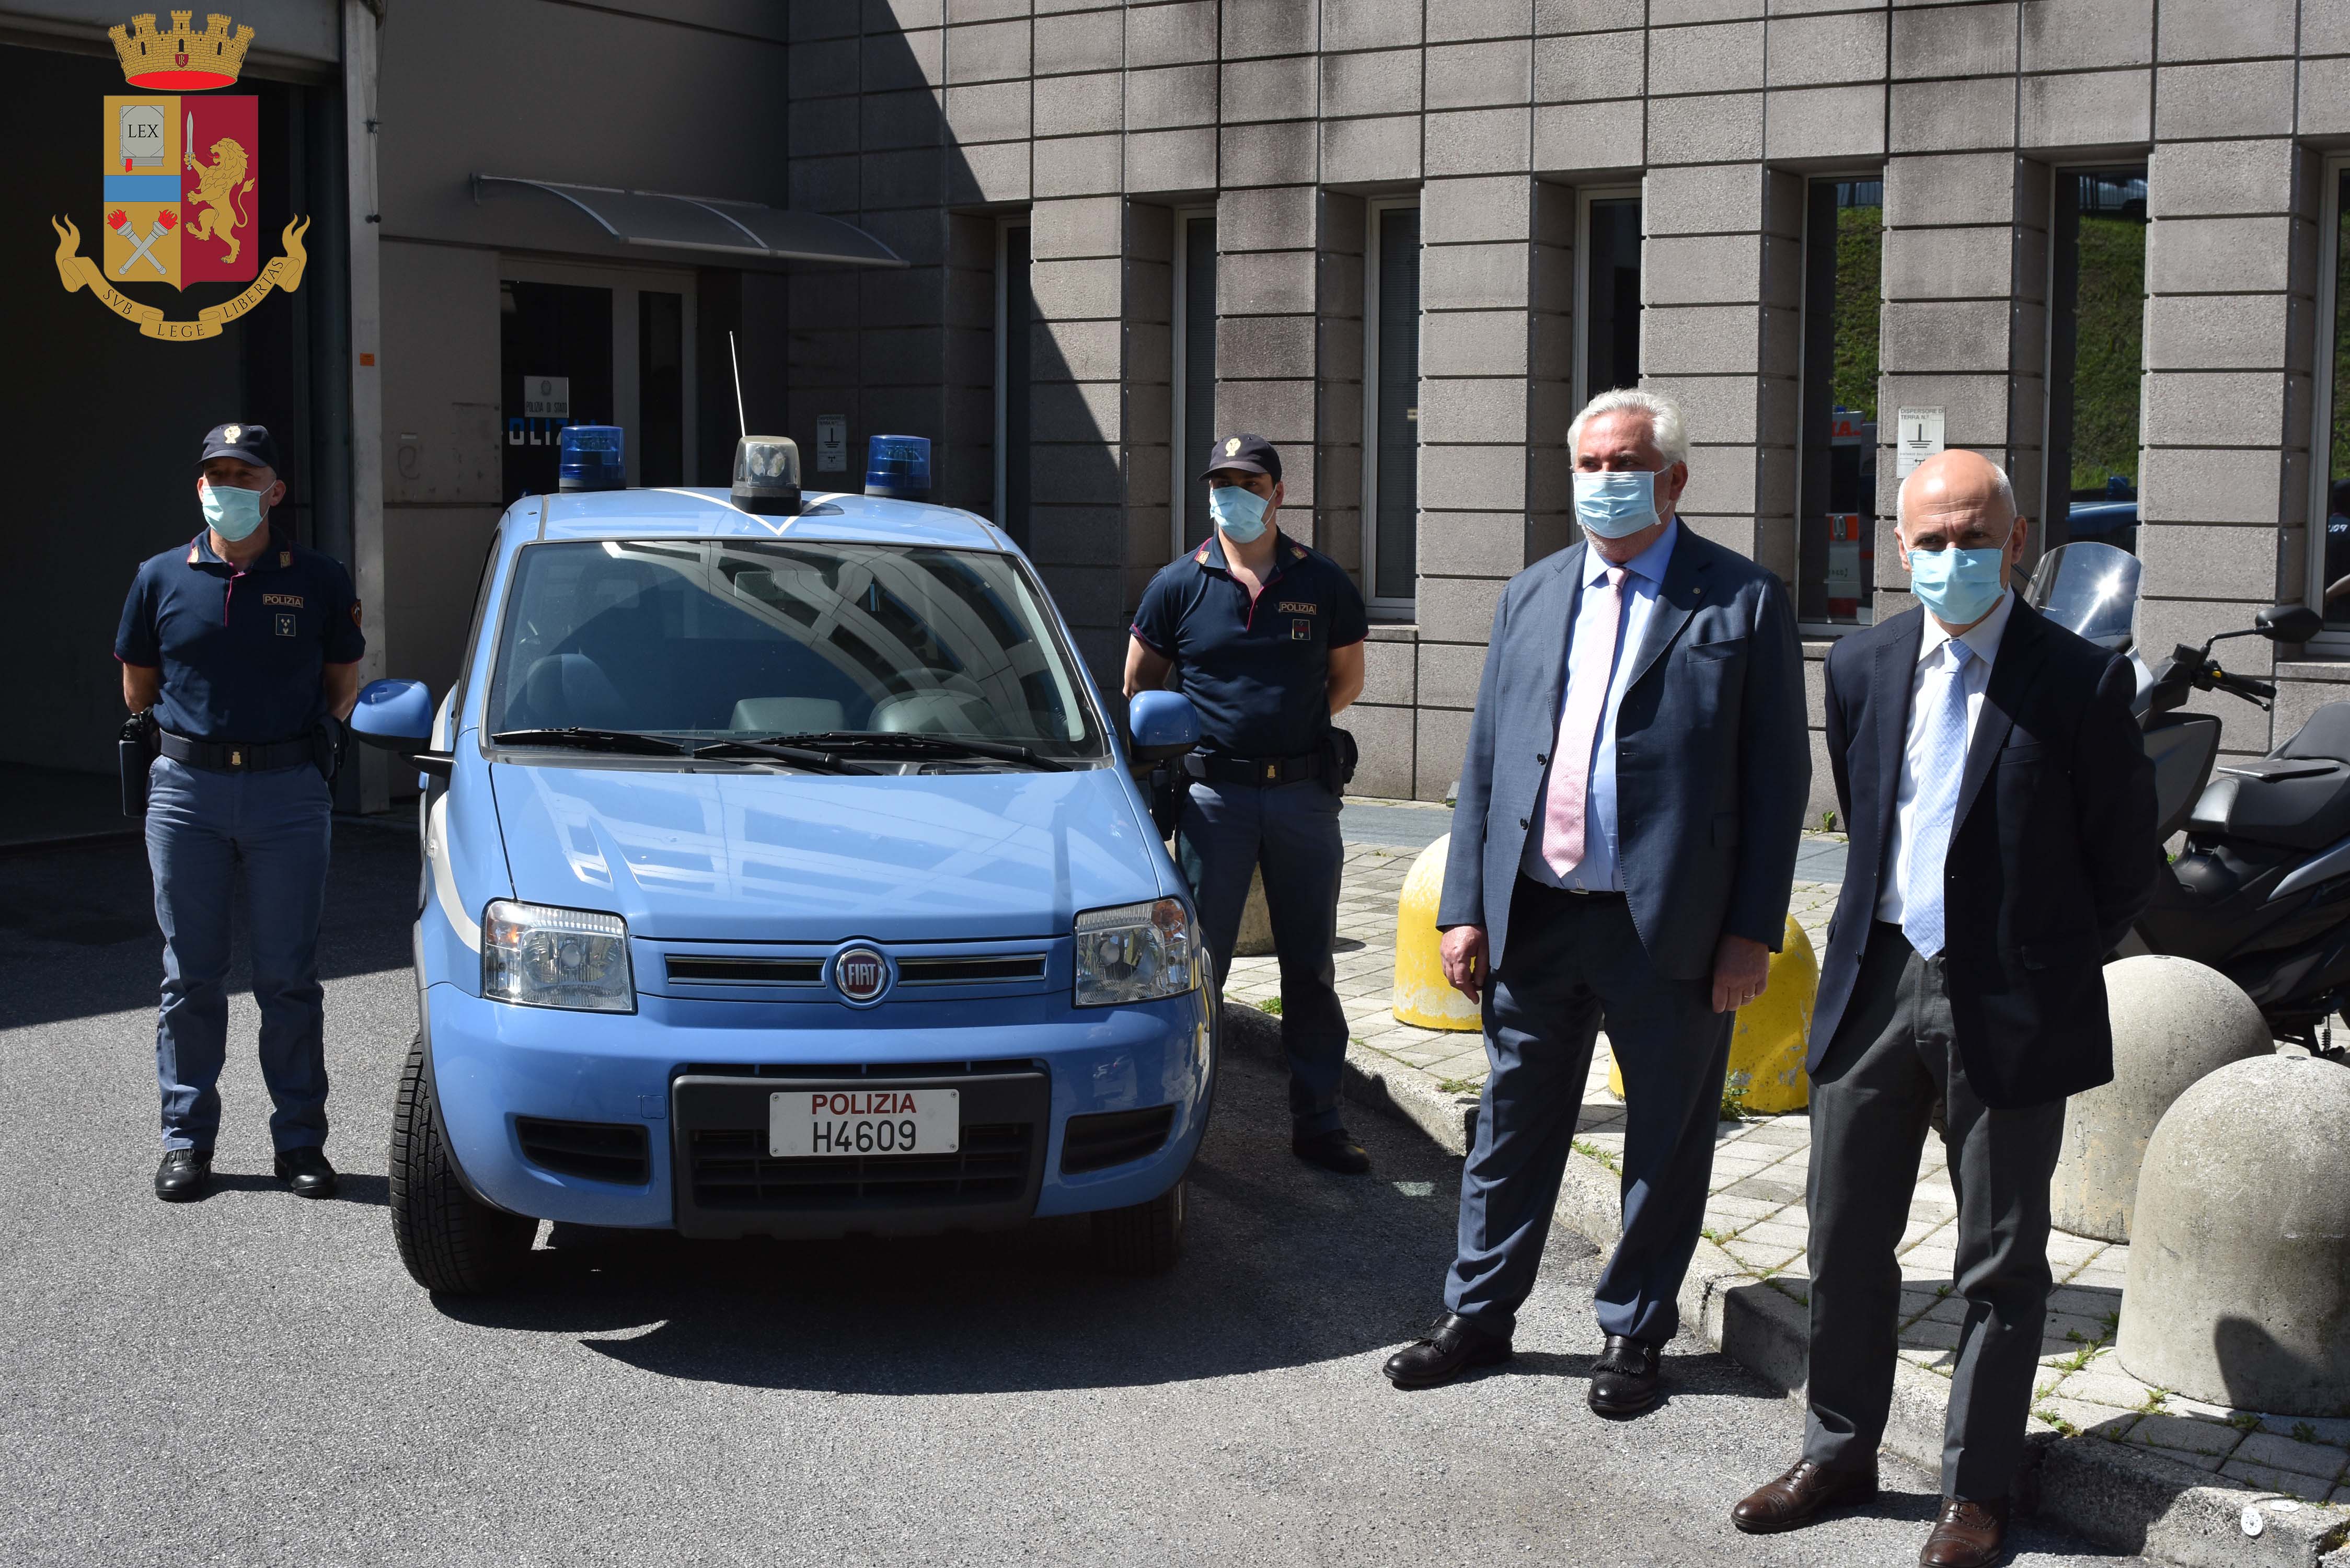 Posto di Polizia presso l'Ospedale "A. Manzoni" di Lecco: arriva un nuovo Agente